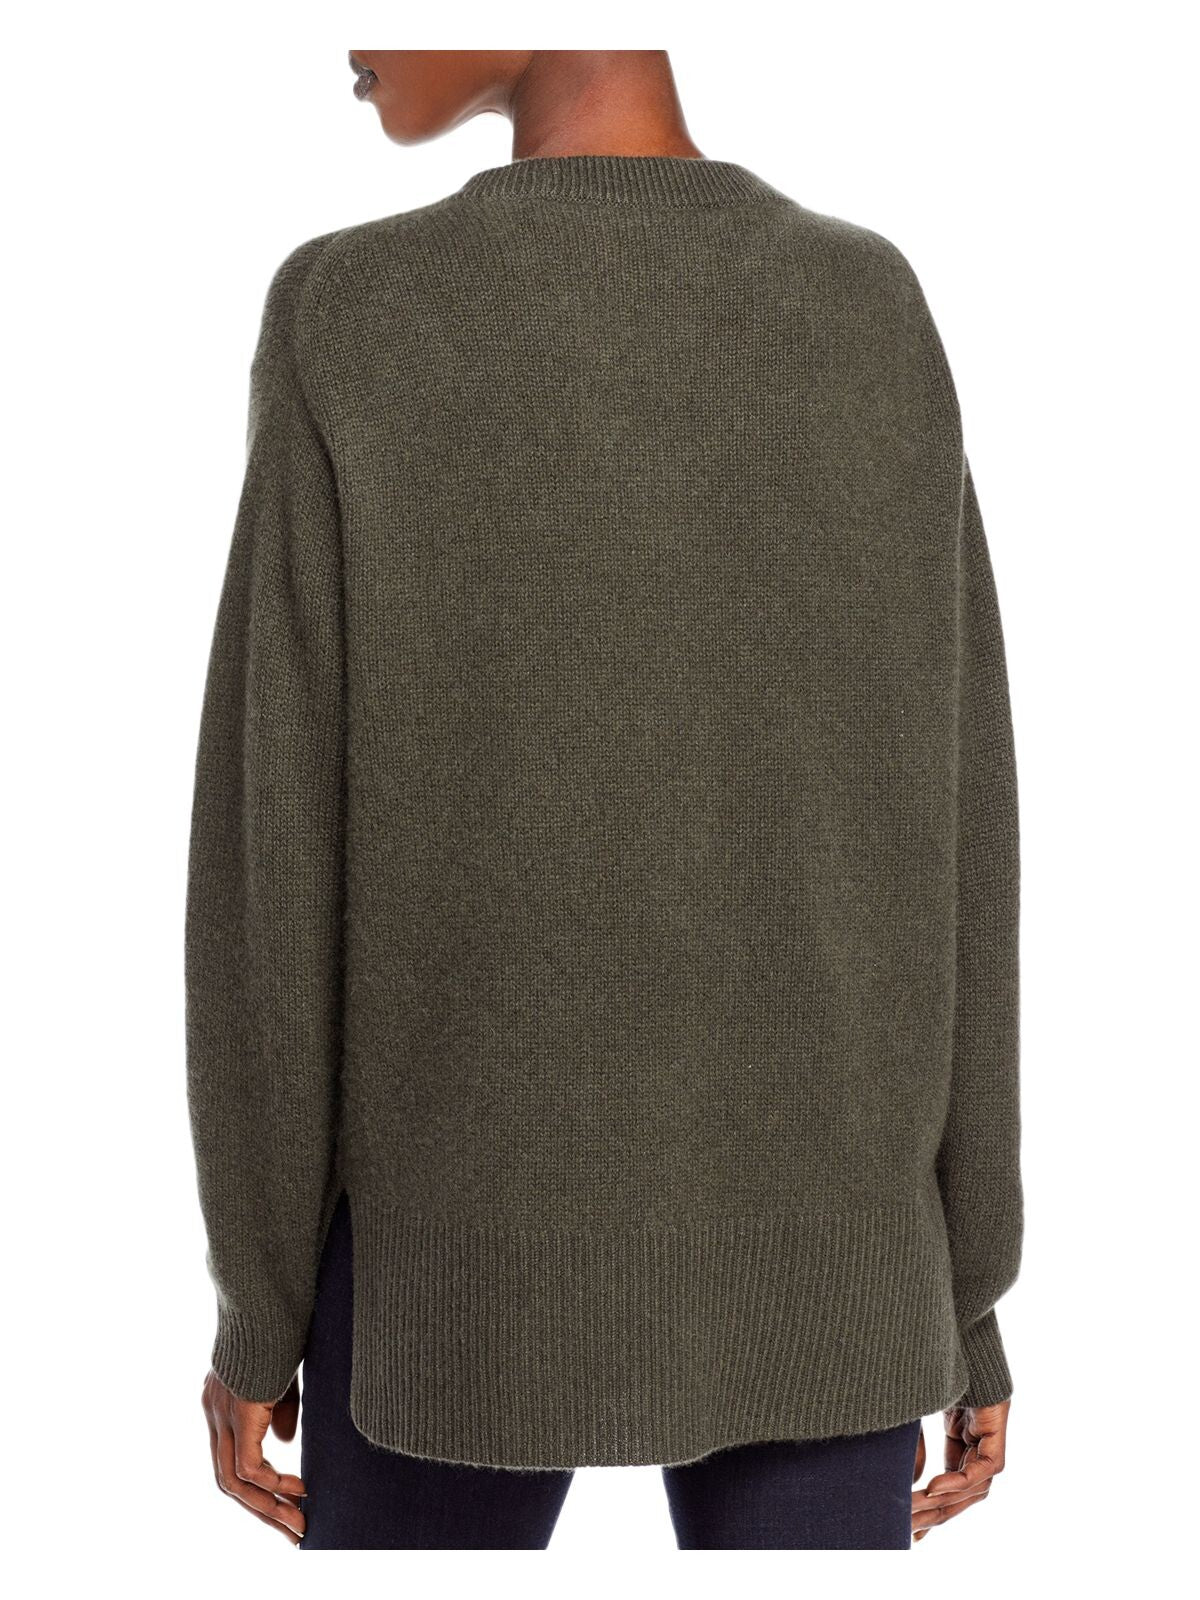 Designer Brand Womens Gray Long Sleeve V Neck Sweater XS